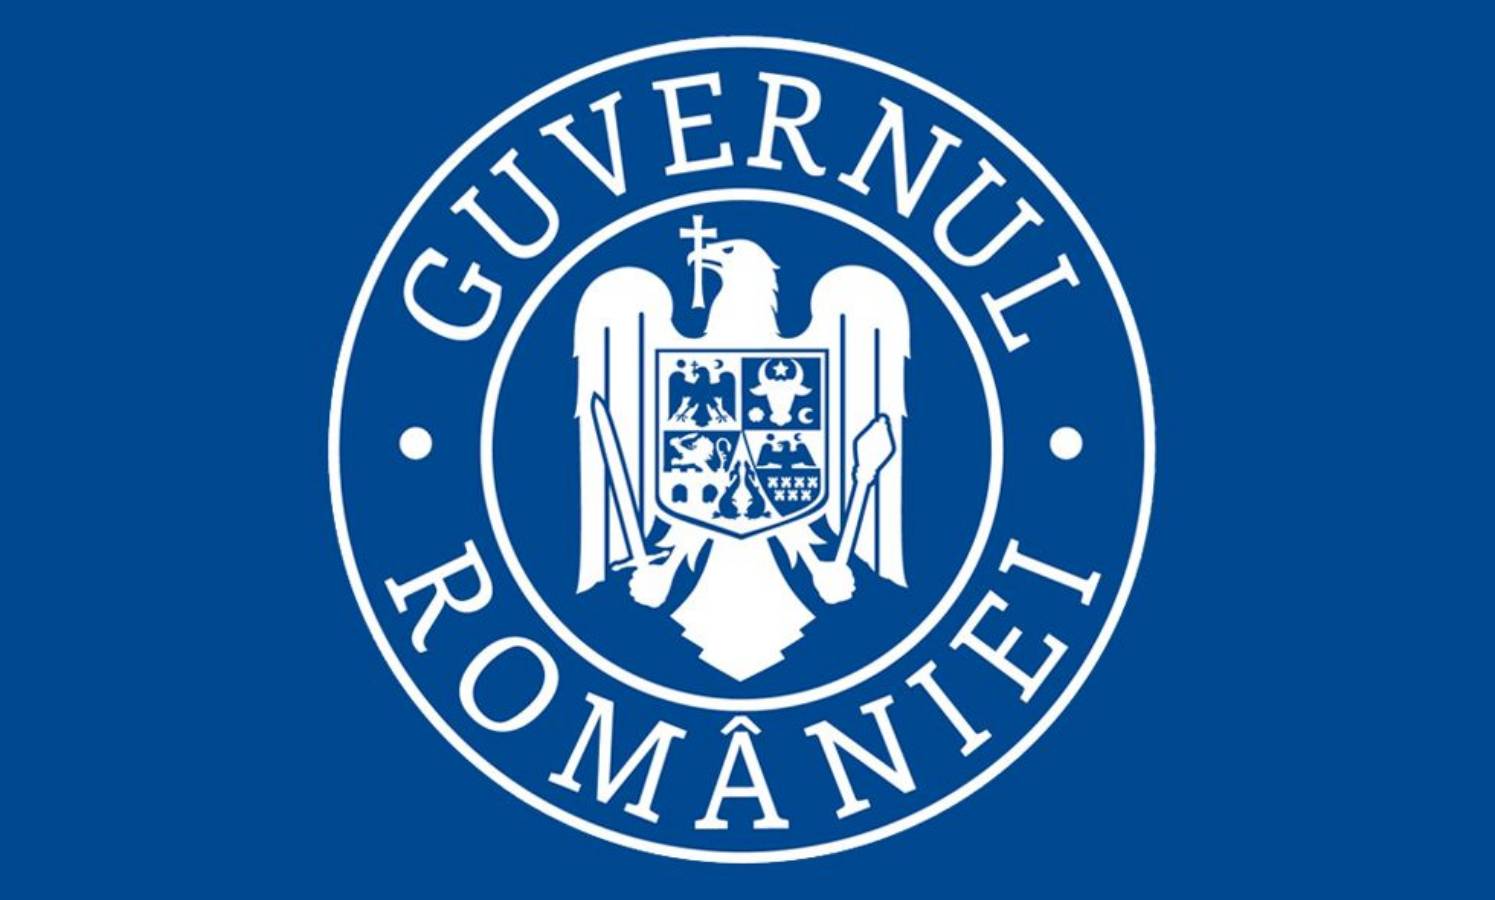 Guvernul Romaniei promovare vaccinare